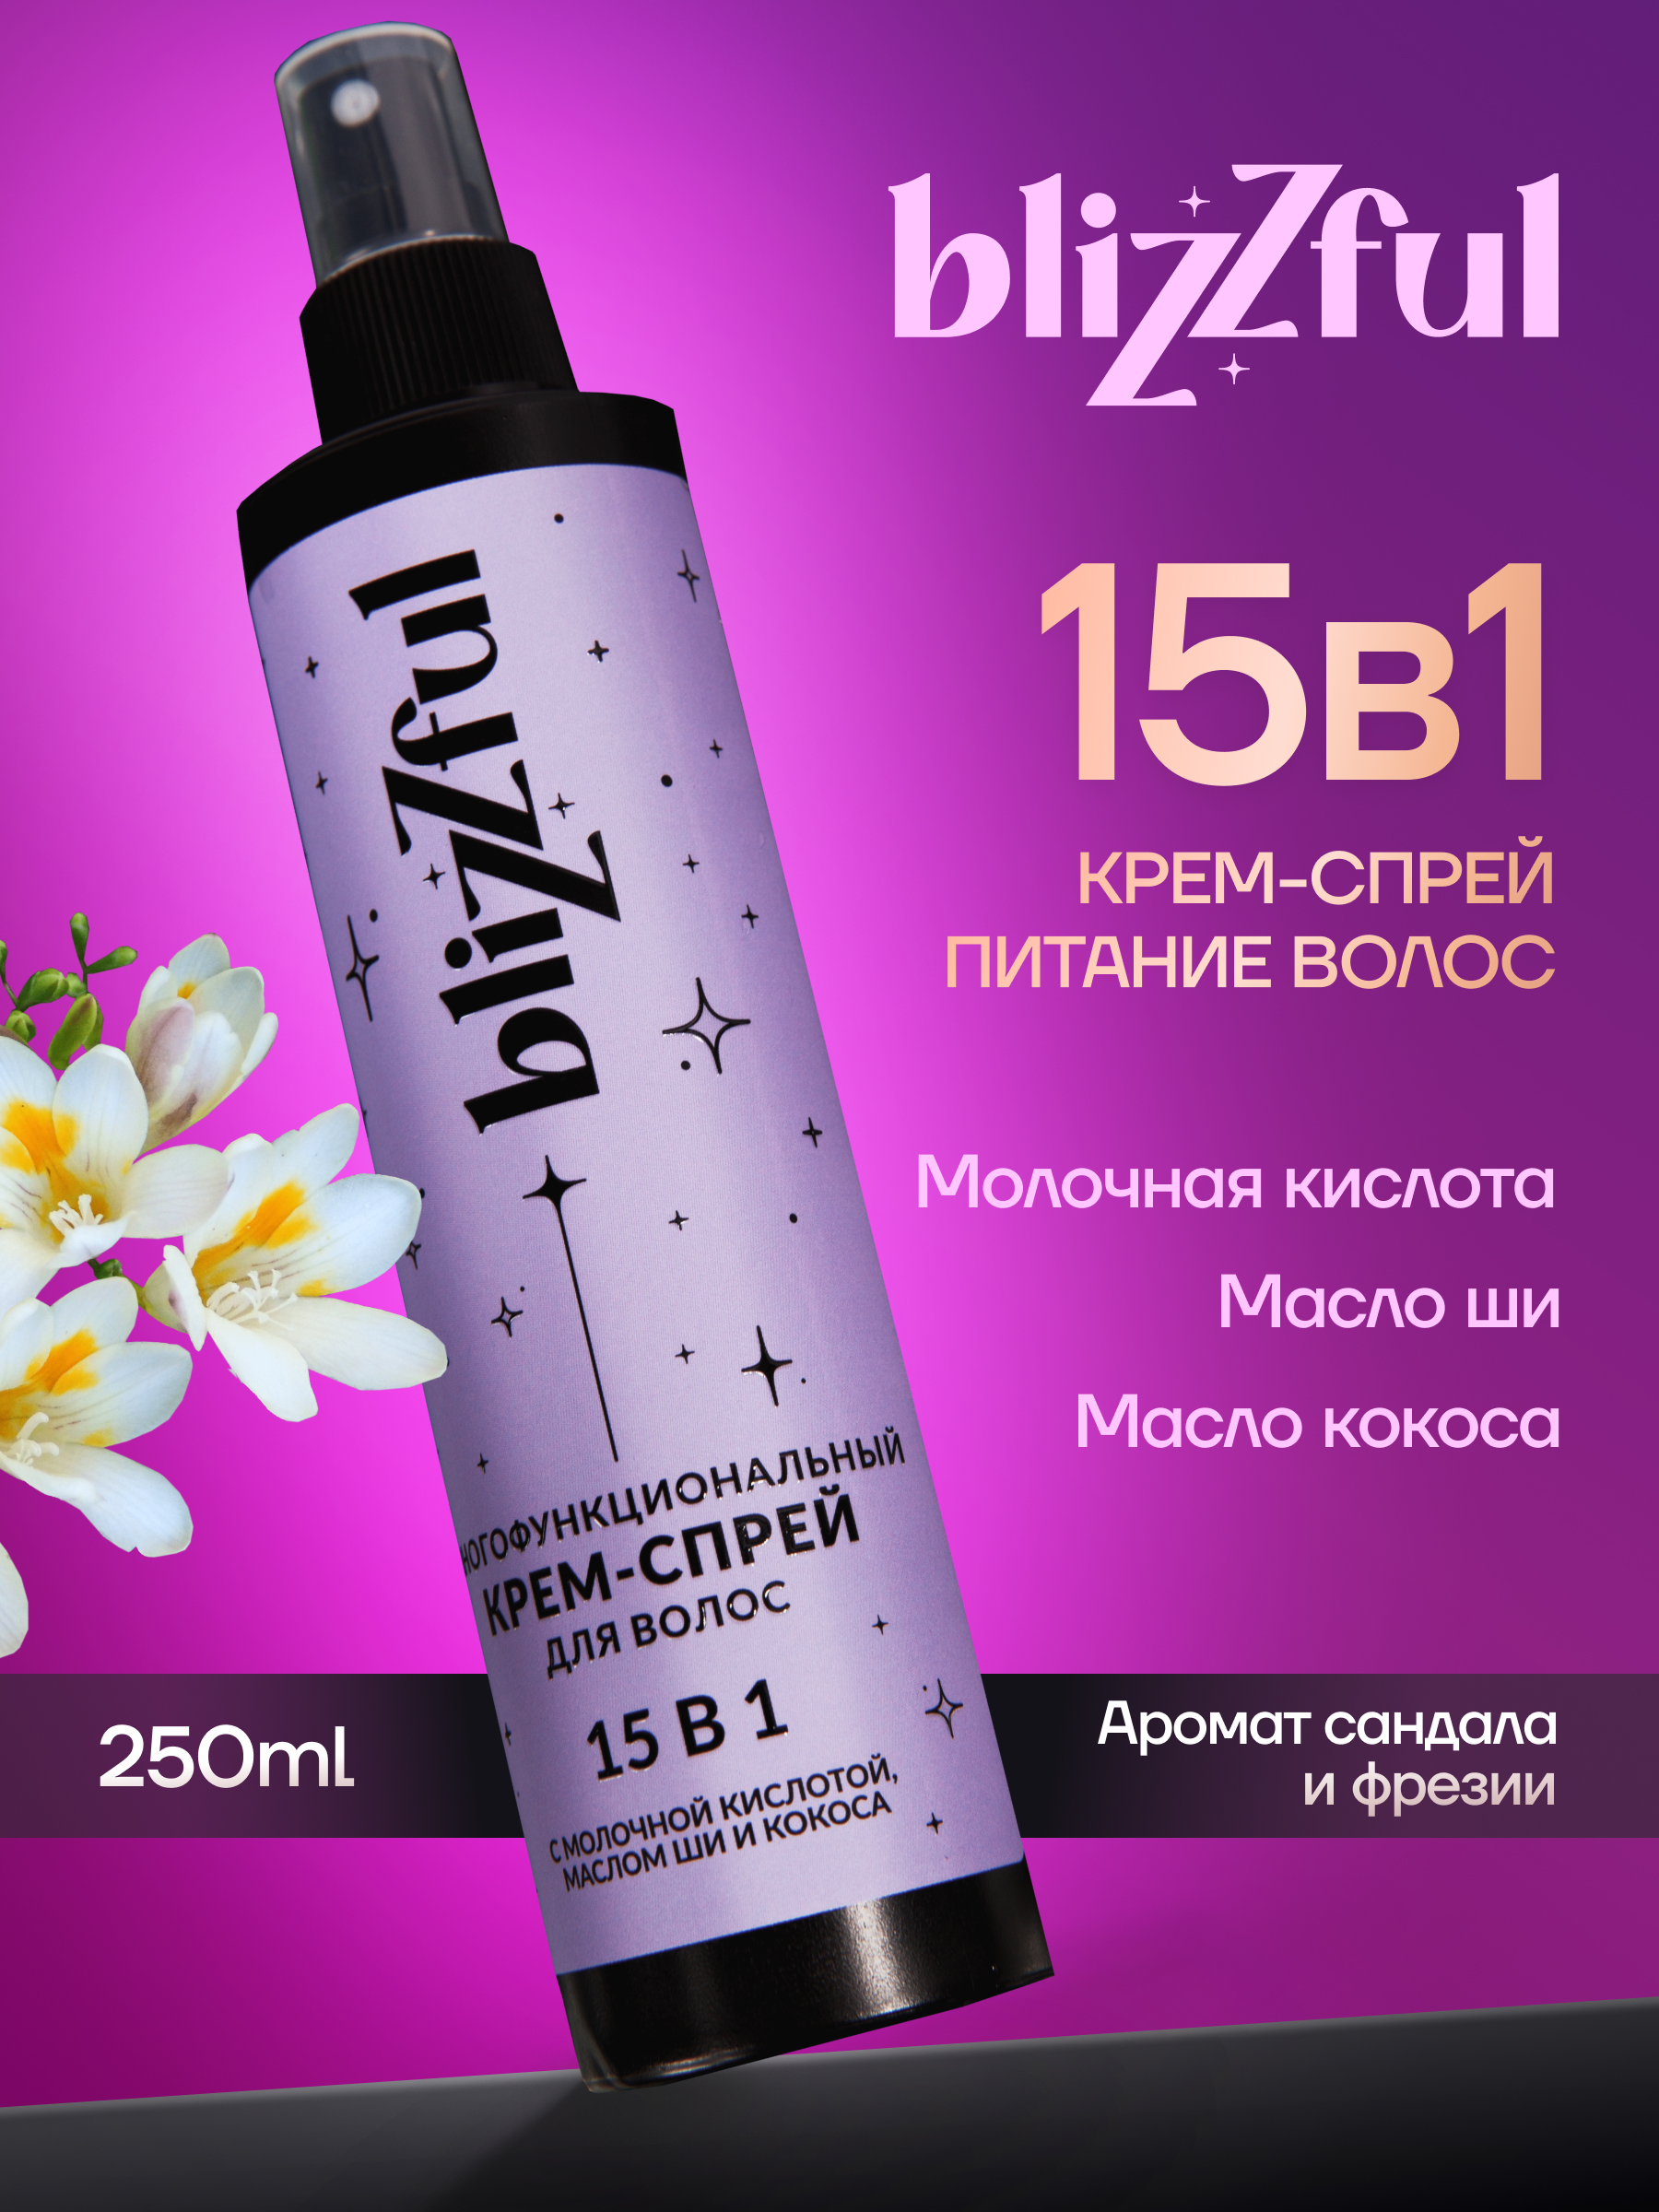 Многофункциональный крем-спрей Blizzful для волос 15 в 1 250мл многофункциональный спрей для волос vibes know it all chivmp2 59 мл